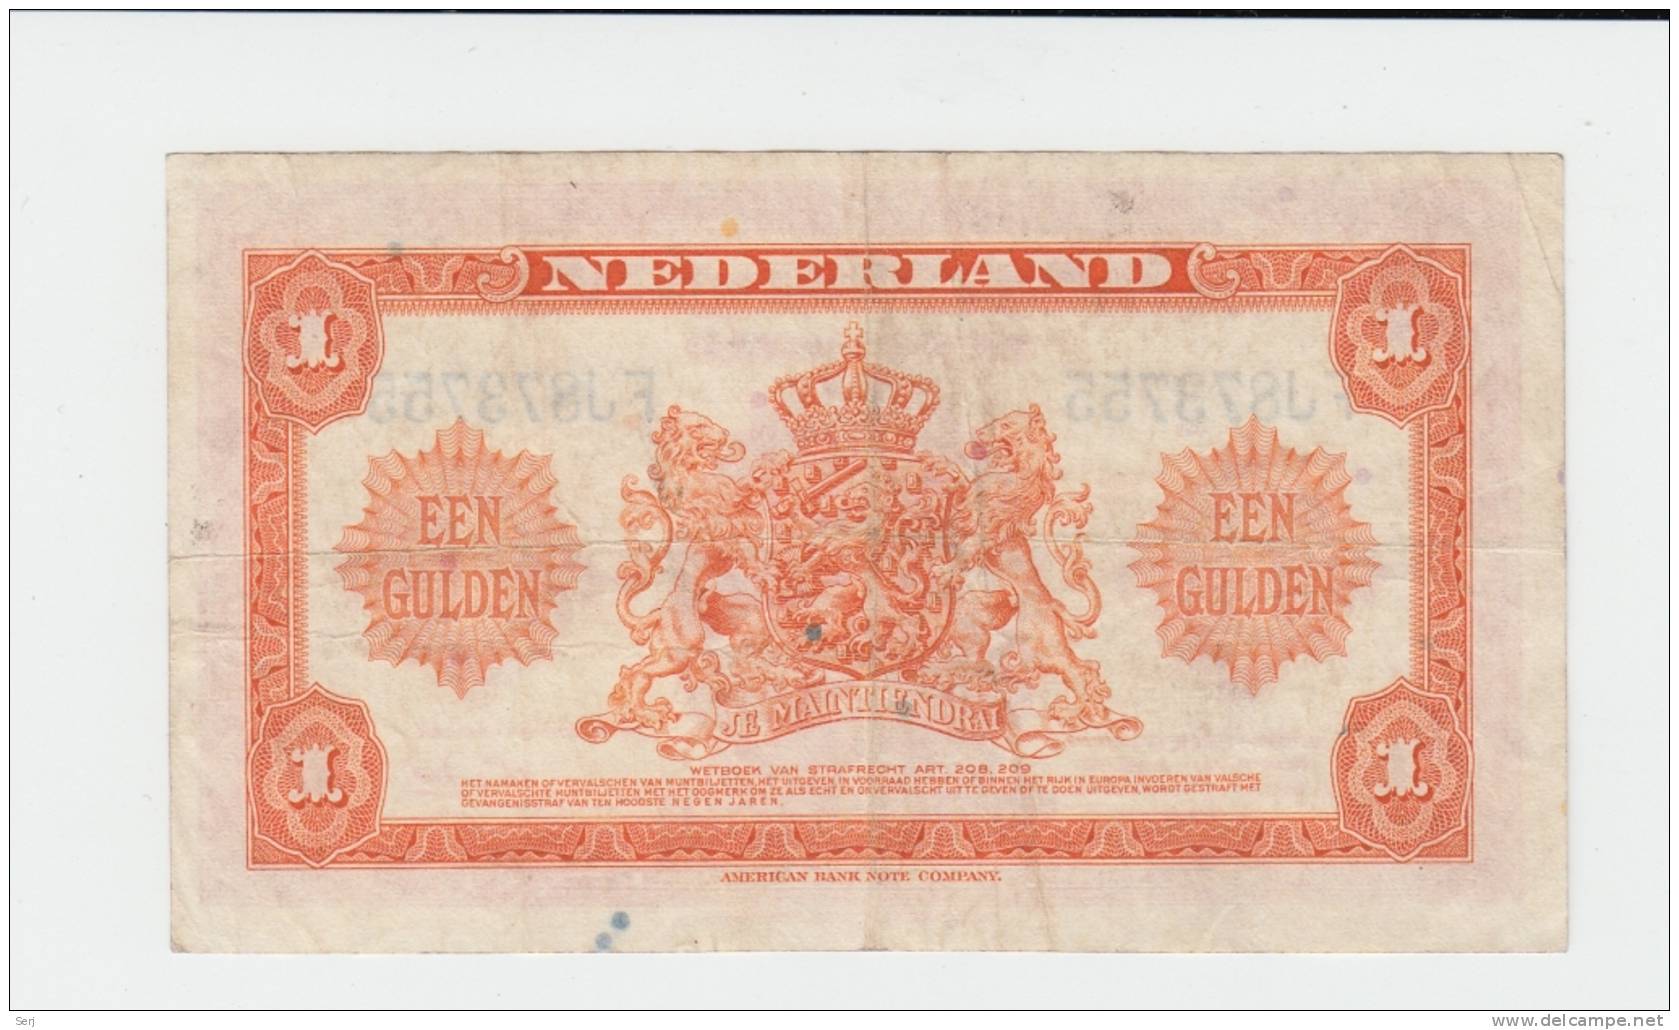 Netherlands 1 Gulden 1943 VF P 64 - 1 Gulden